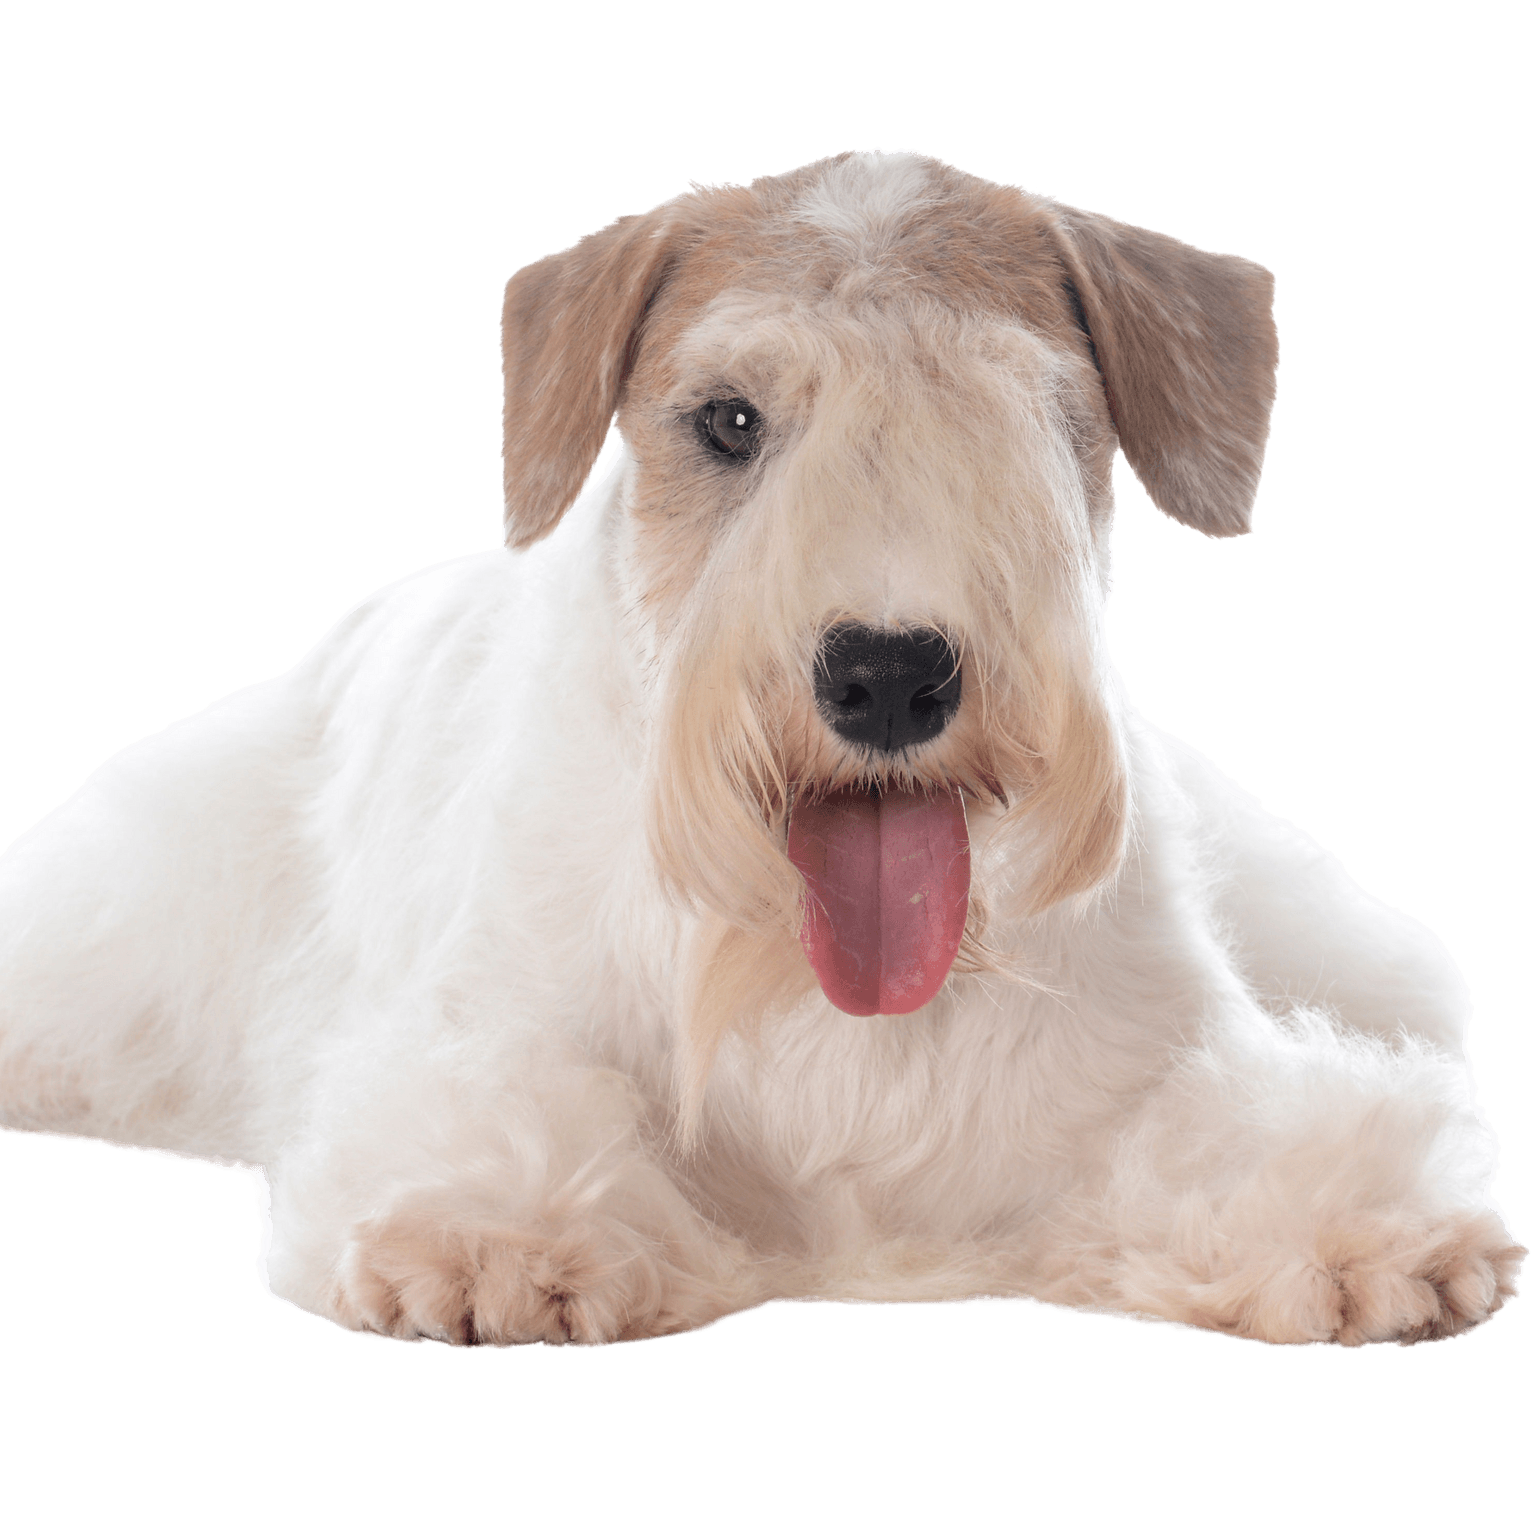 Sealyham Terrier Rassebeschreibung, Stadthund, kleiner Anfängerhund weiß mit welligem Fell, Dreecksohren, Hund mit vielen Haaren auf der Schnauze, Familienhund, Hunderasse aus Wales, Hunderasse aus England, britische Hunderasse